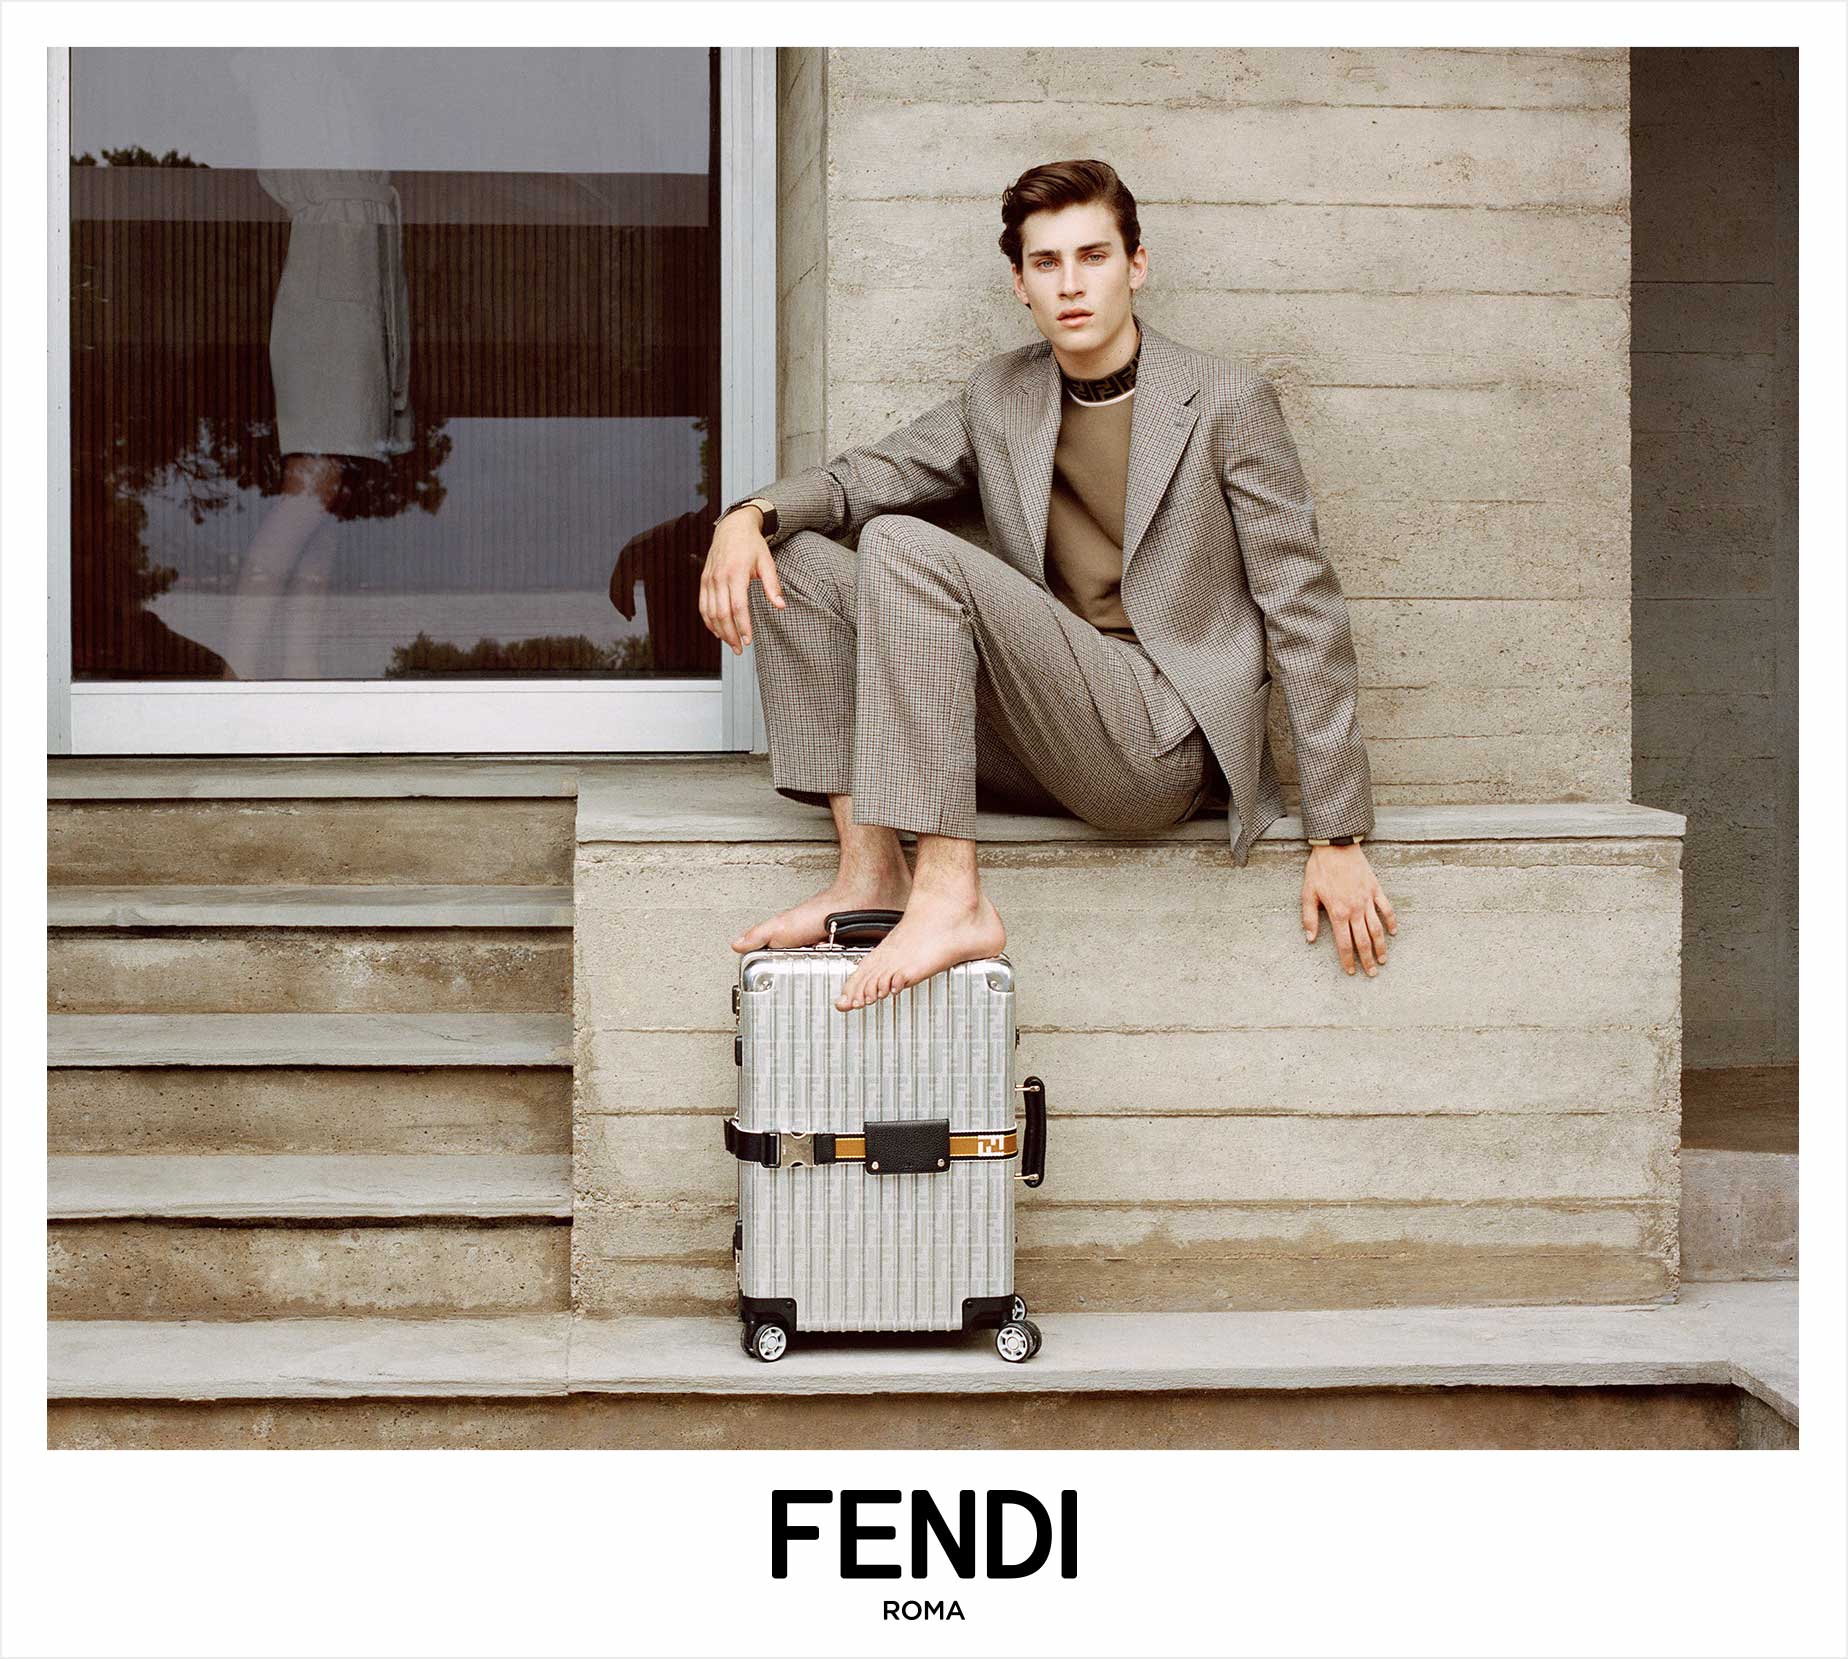 Fendi Identity Design as it appears in Fendi Advertising